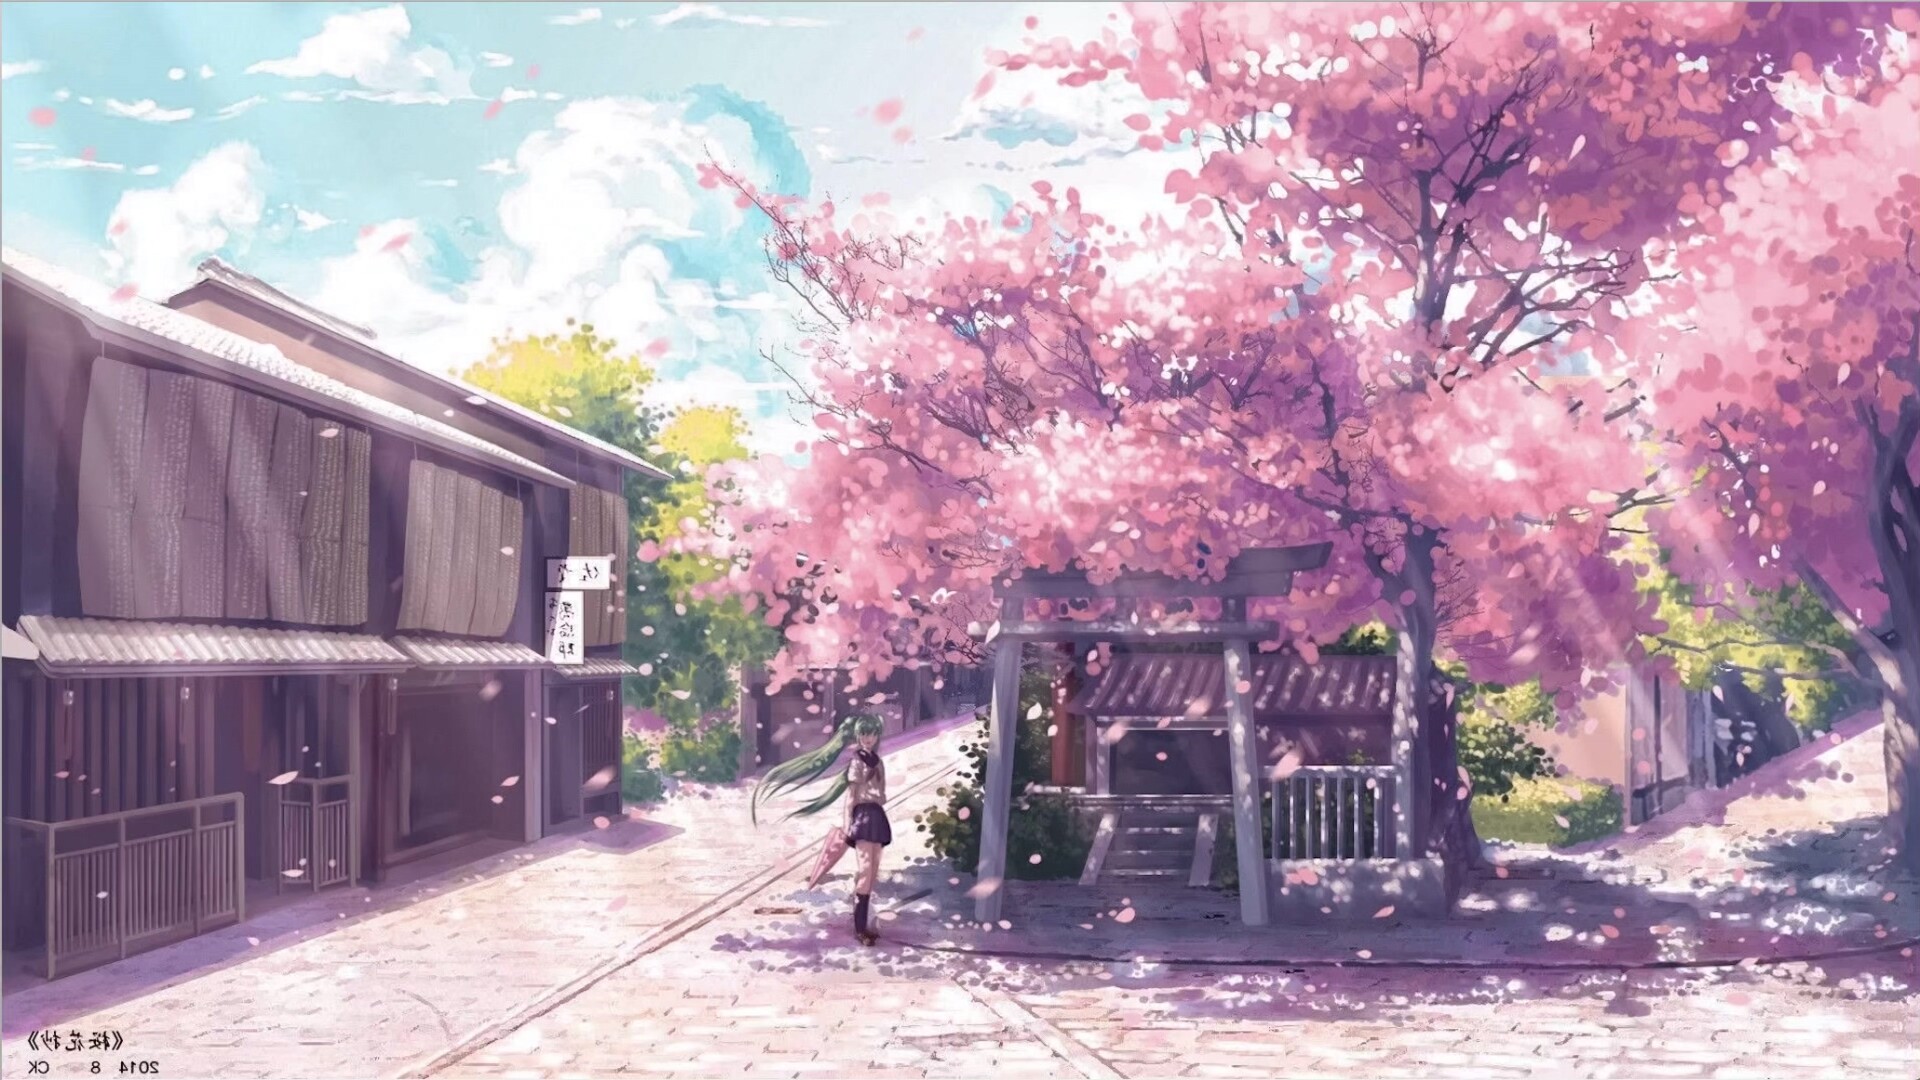 日本的街道如果没有樱花的陪衬,是一种遗憾